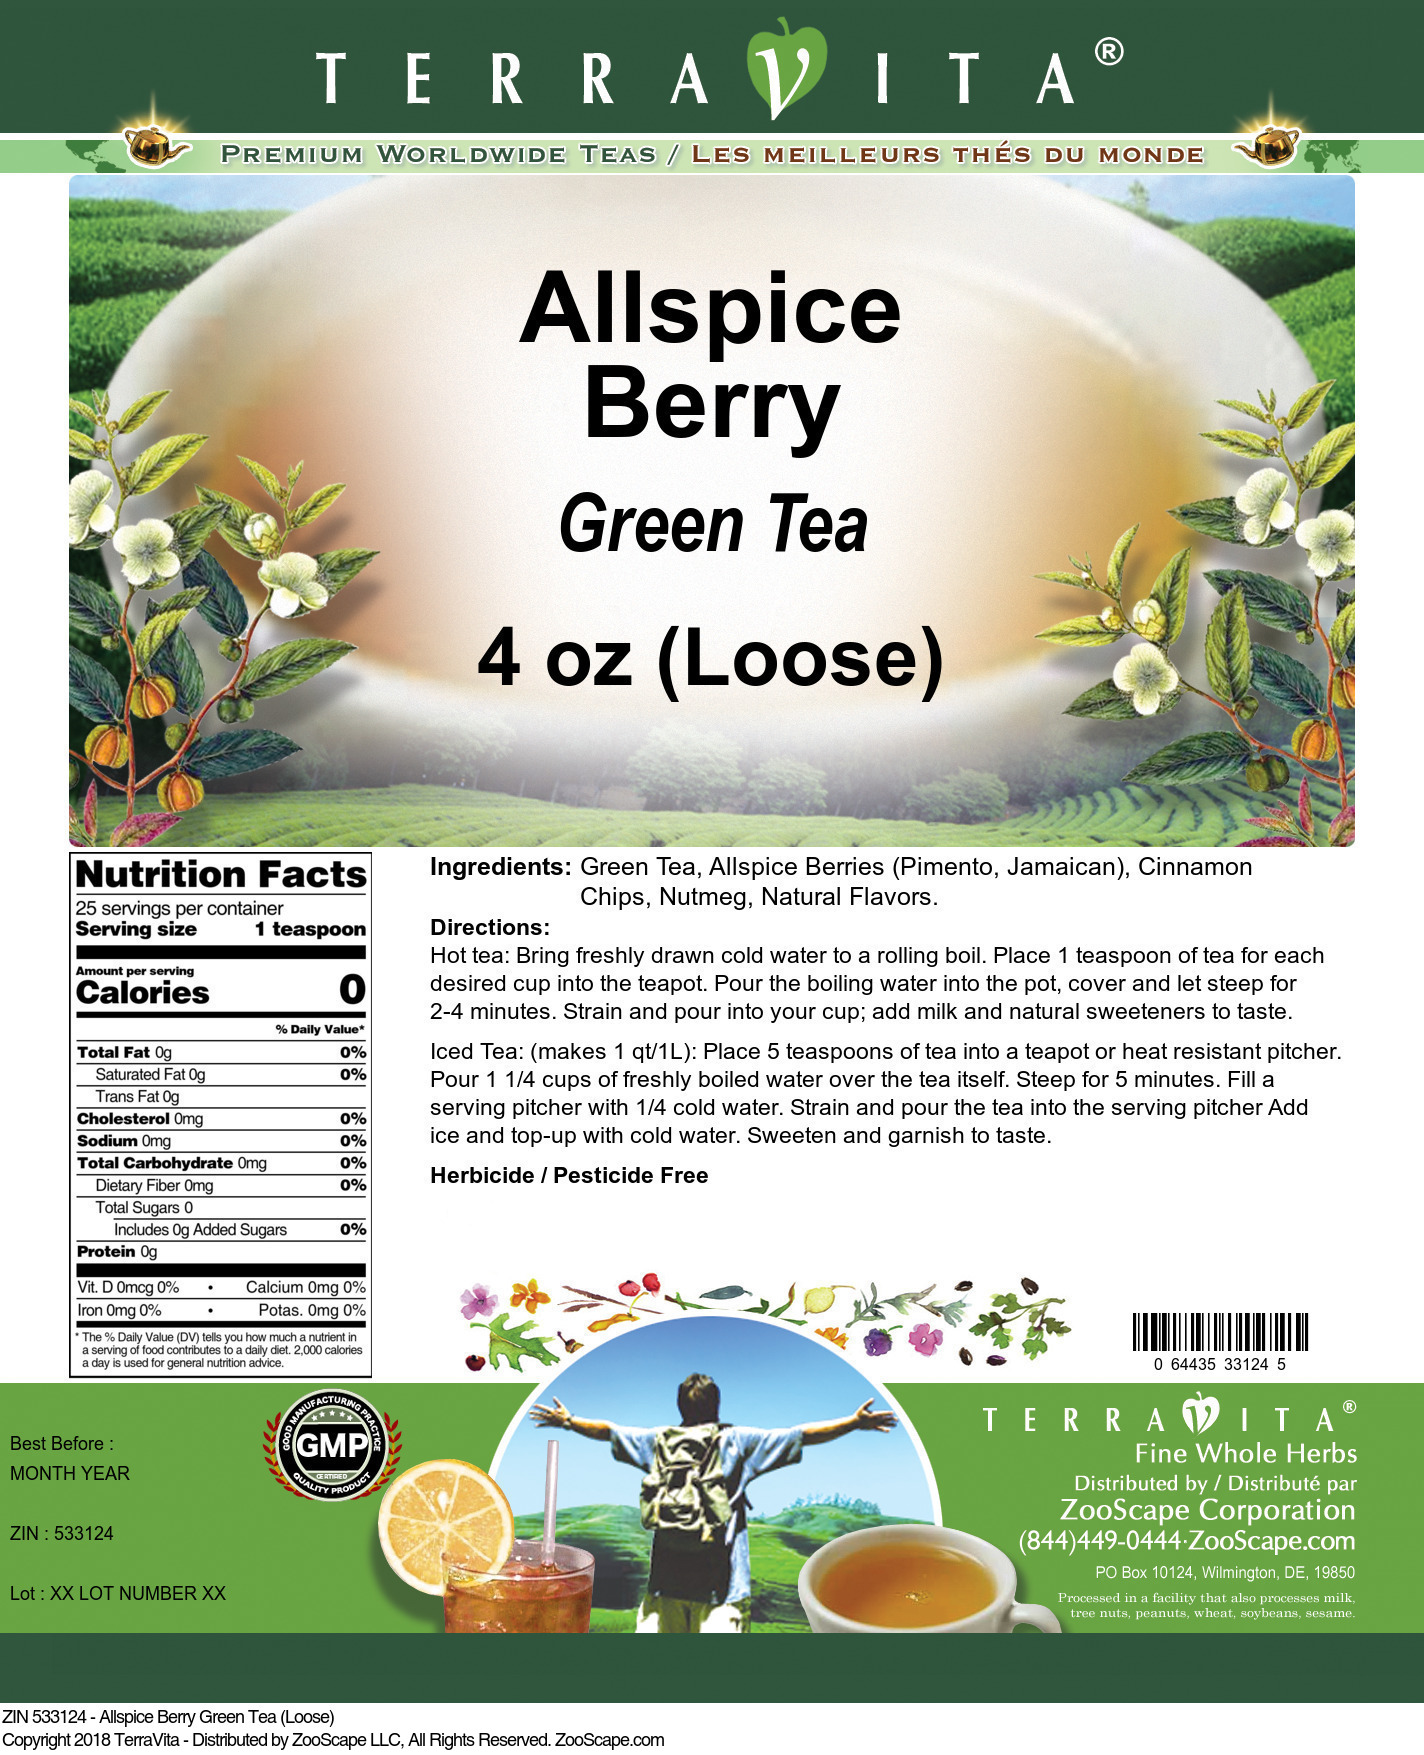 Allspice Berry Green Tea (Loose) - Label